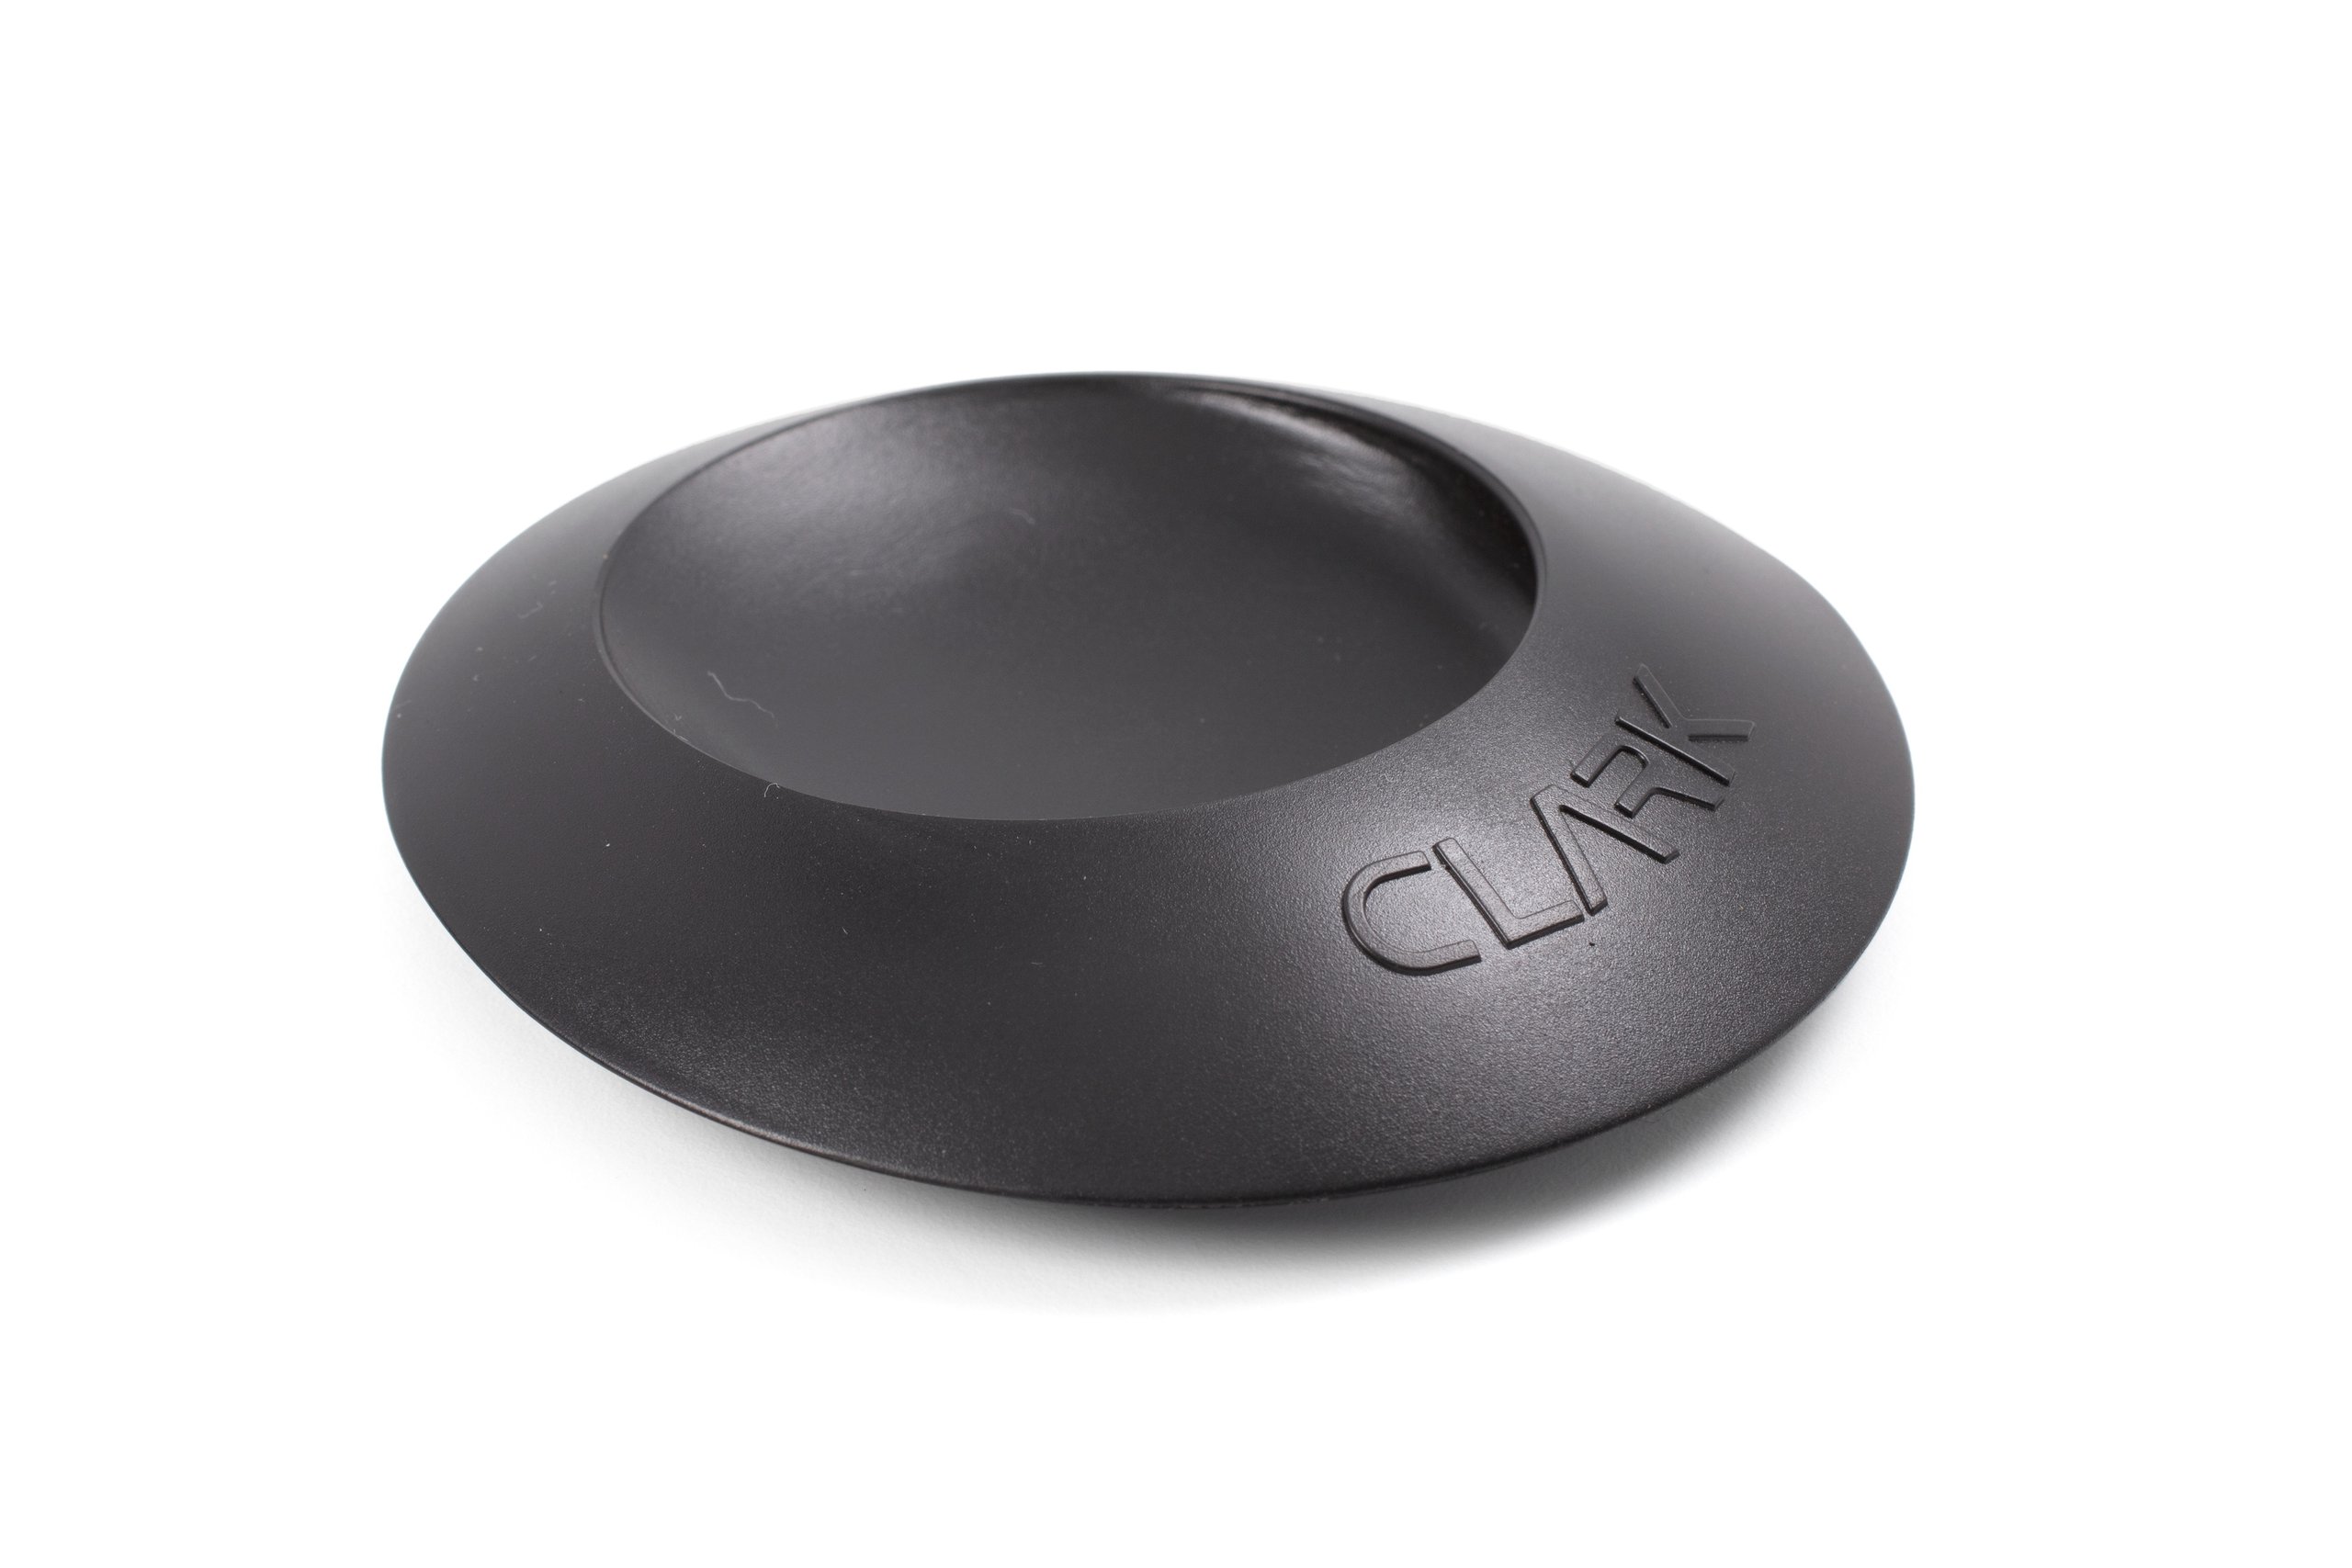 'Clark sink plug' designed by Nielsen Design Associates